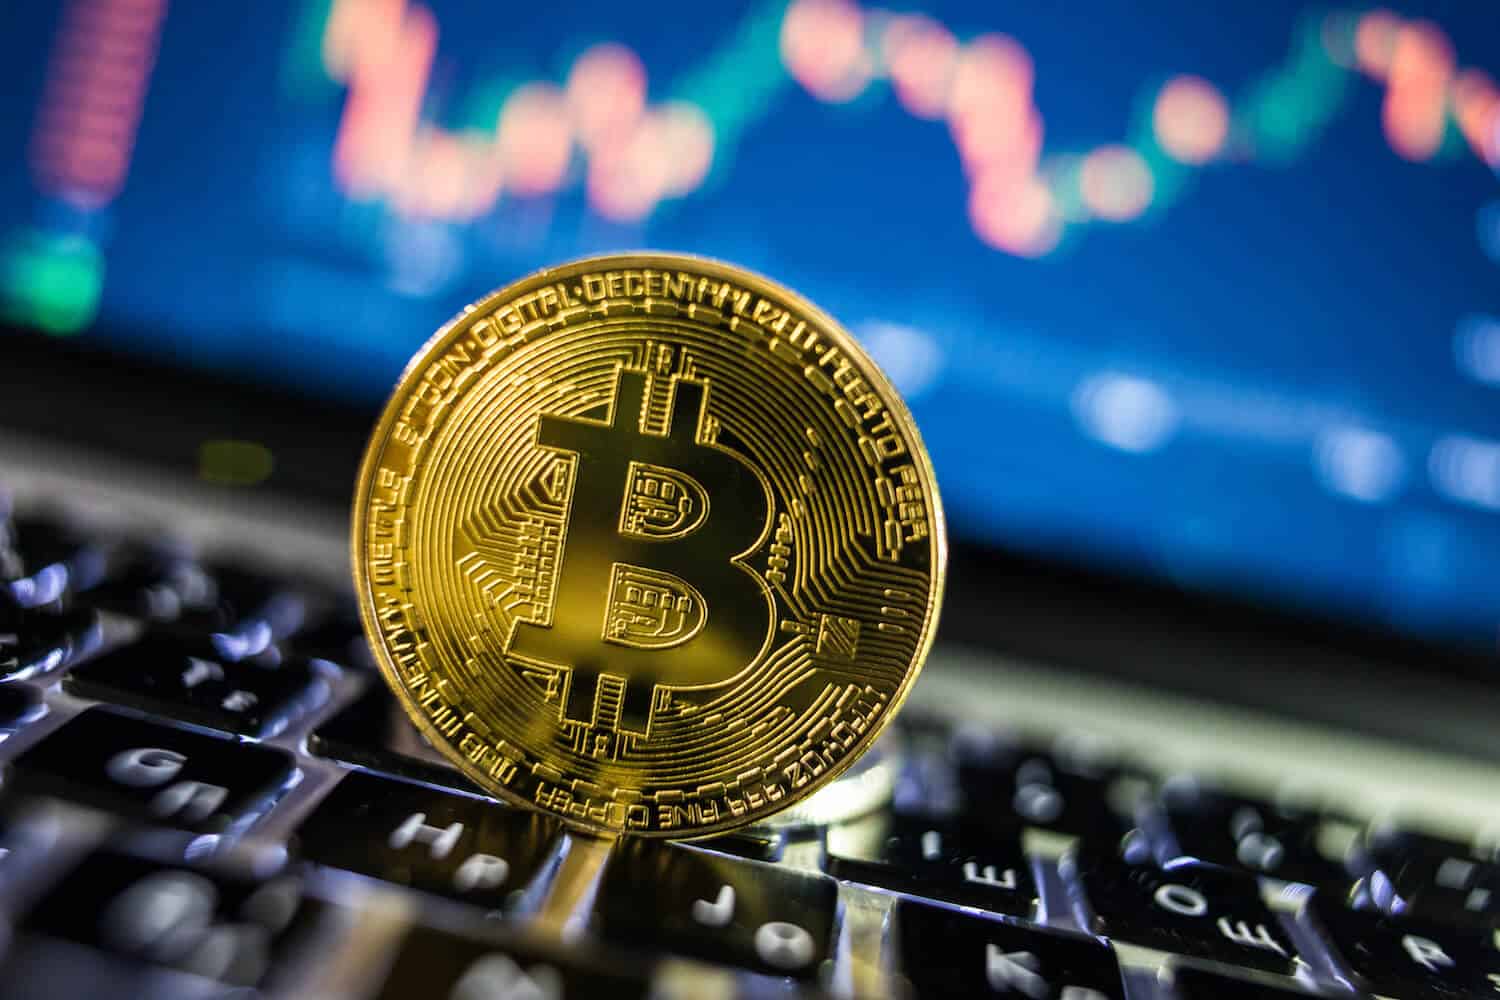 Bitcoin coin on keyboard